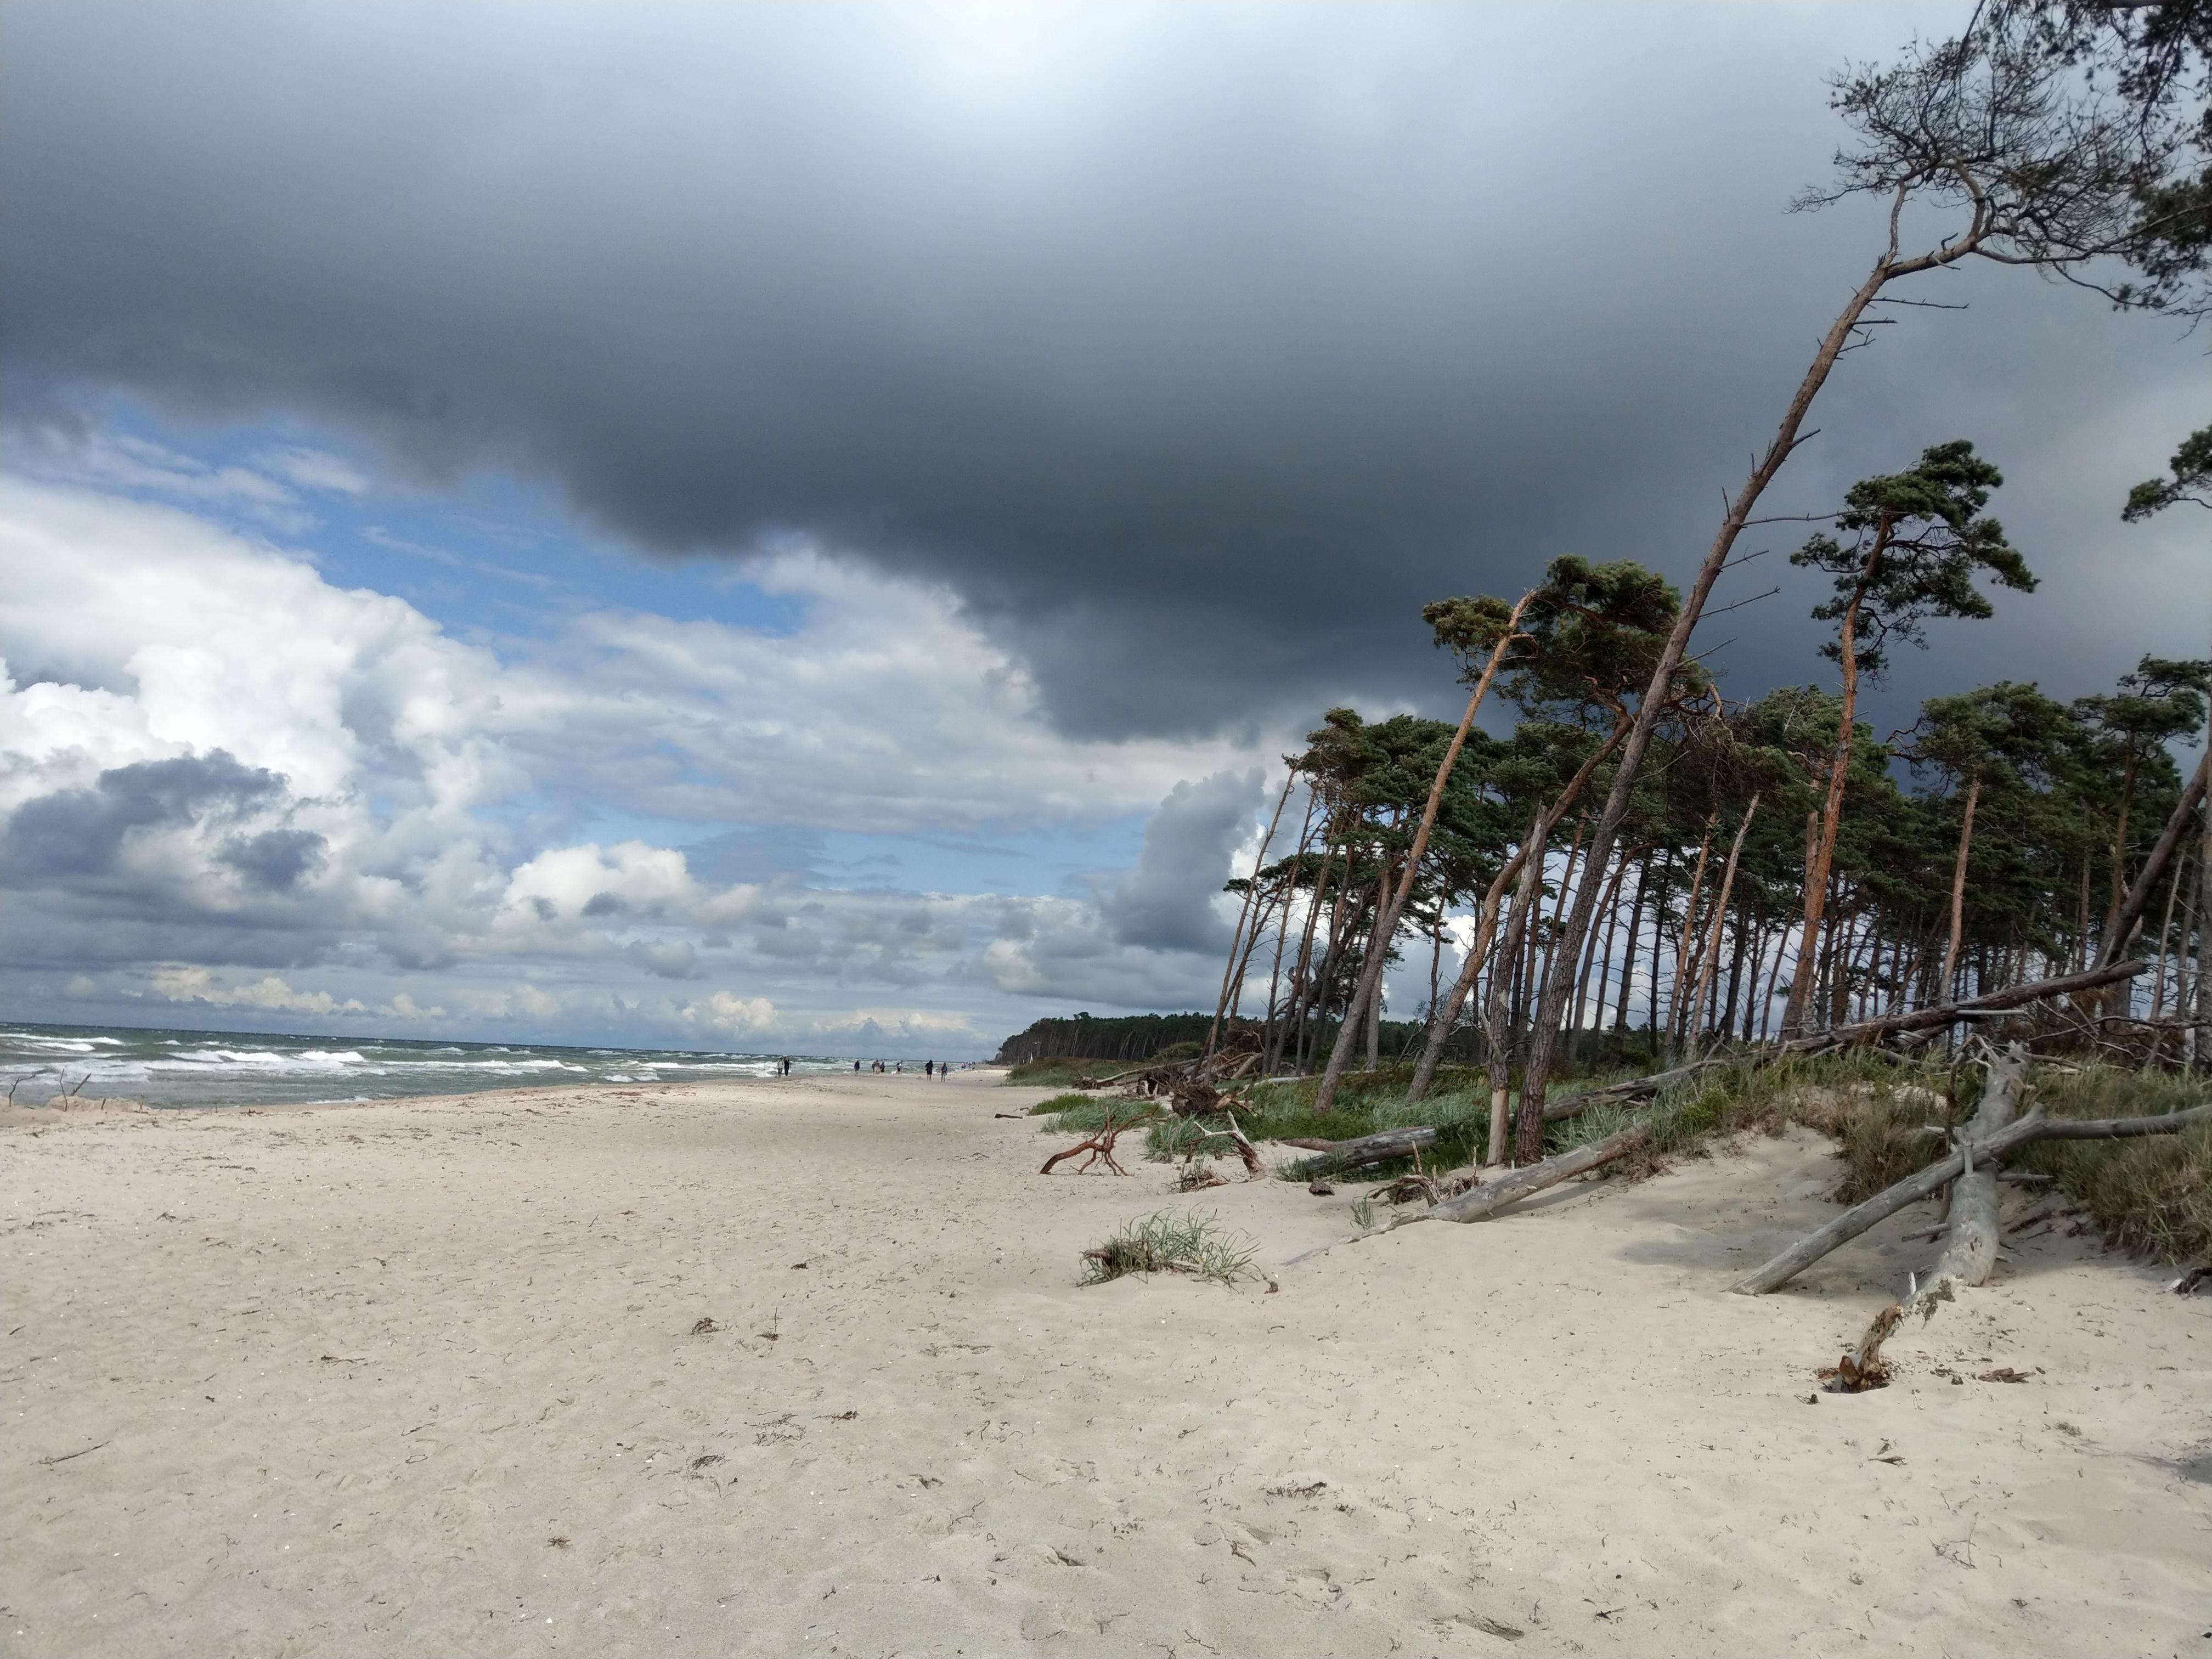 Immer wieder bester #Urlaub #Ostsee #Darss Wieviel Meer muss es für Dich sein?
@rundum_zuhause #meetthecommunity